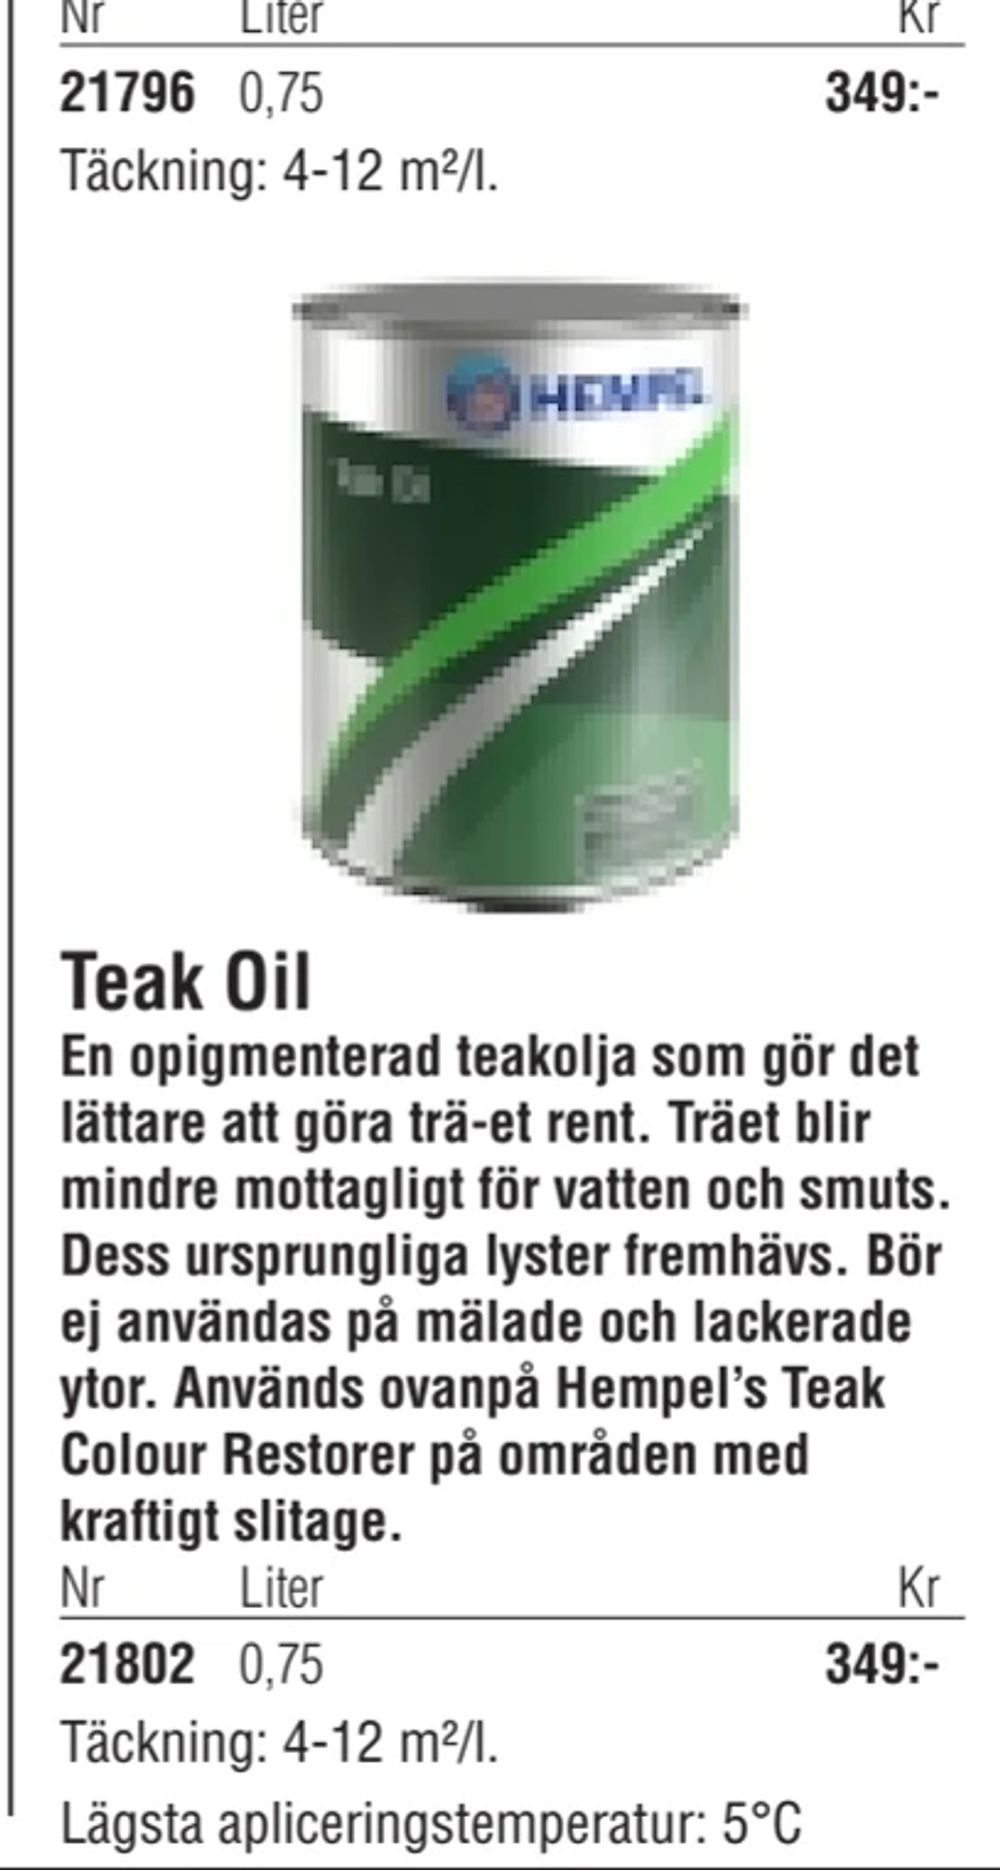 Erbjudanden på Teak Oil från Erlandsons Brygga för 349 kr